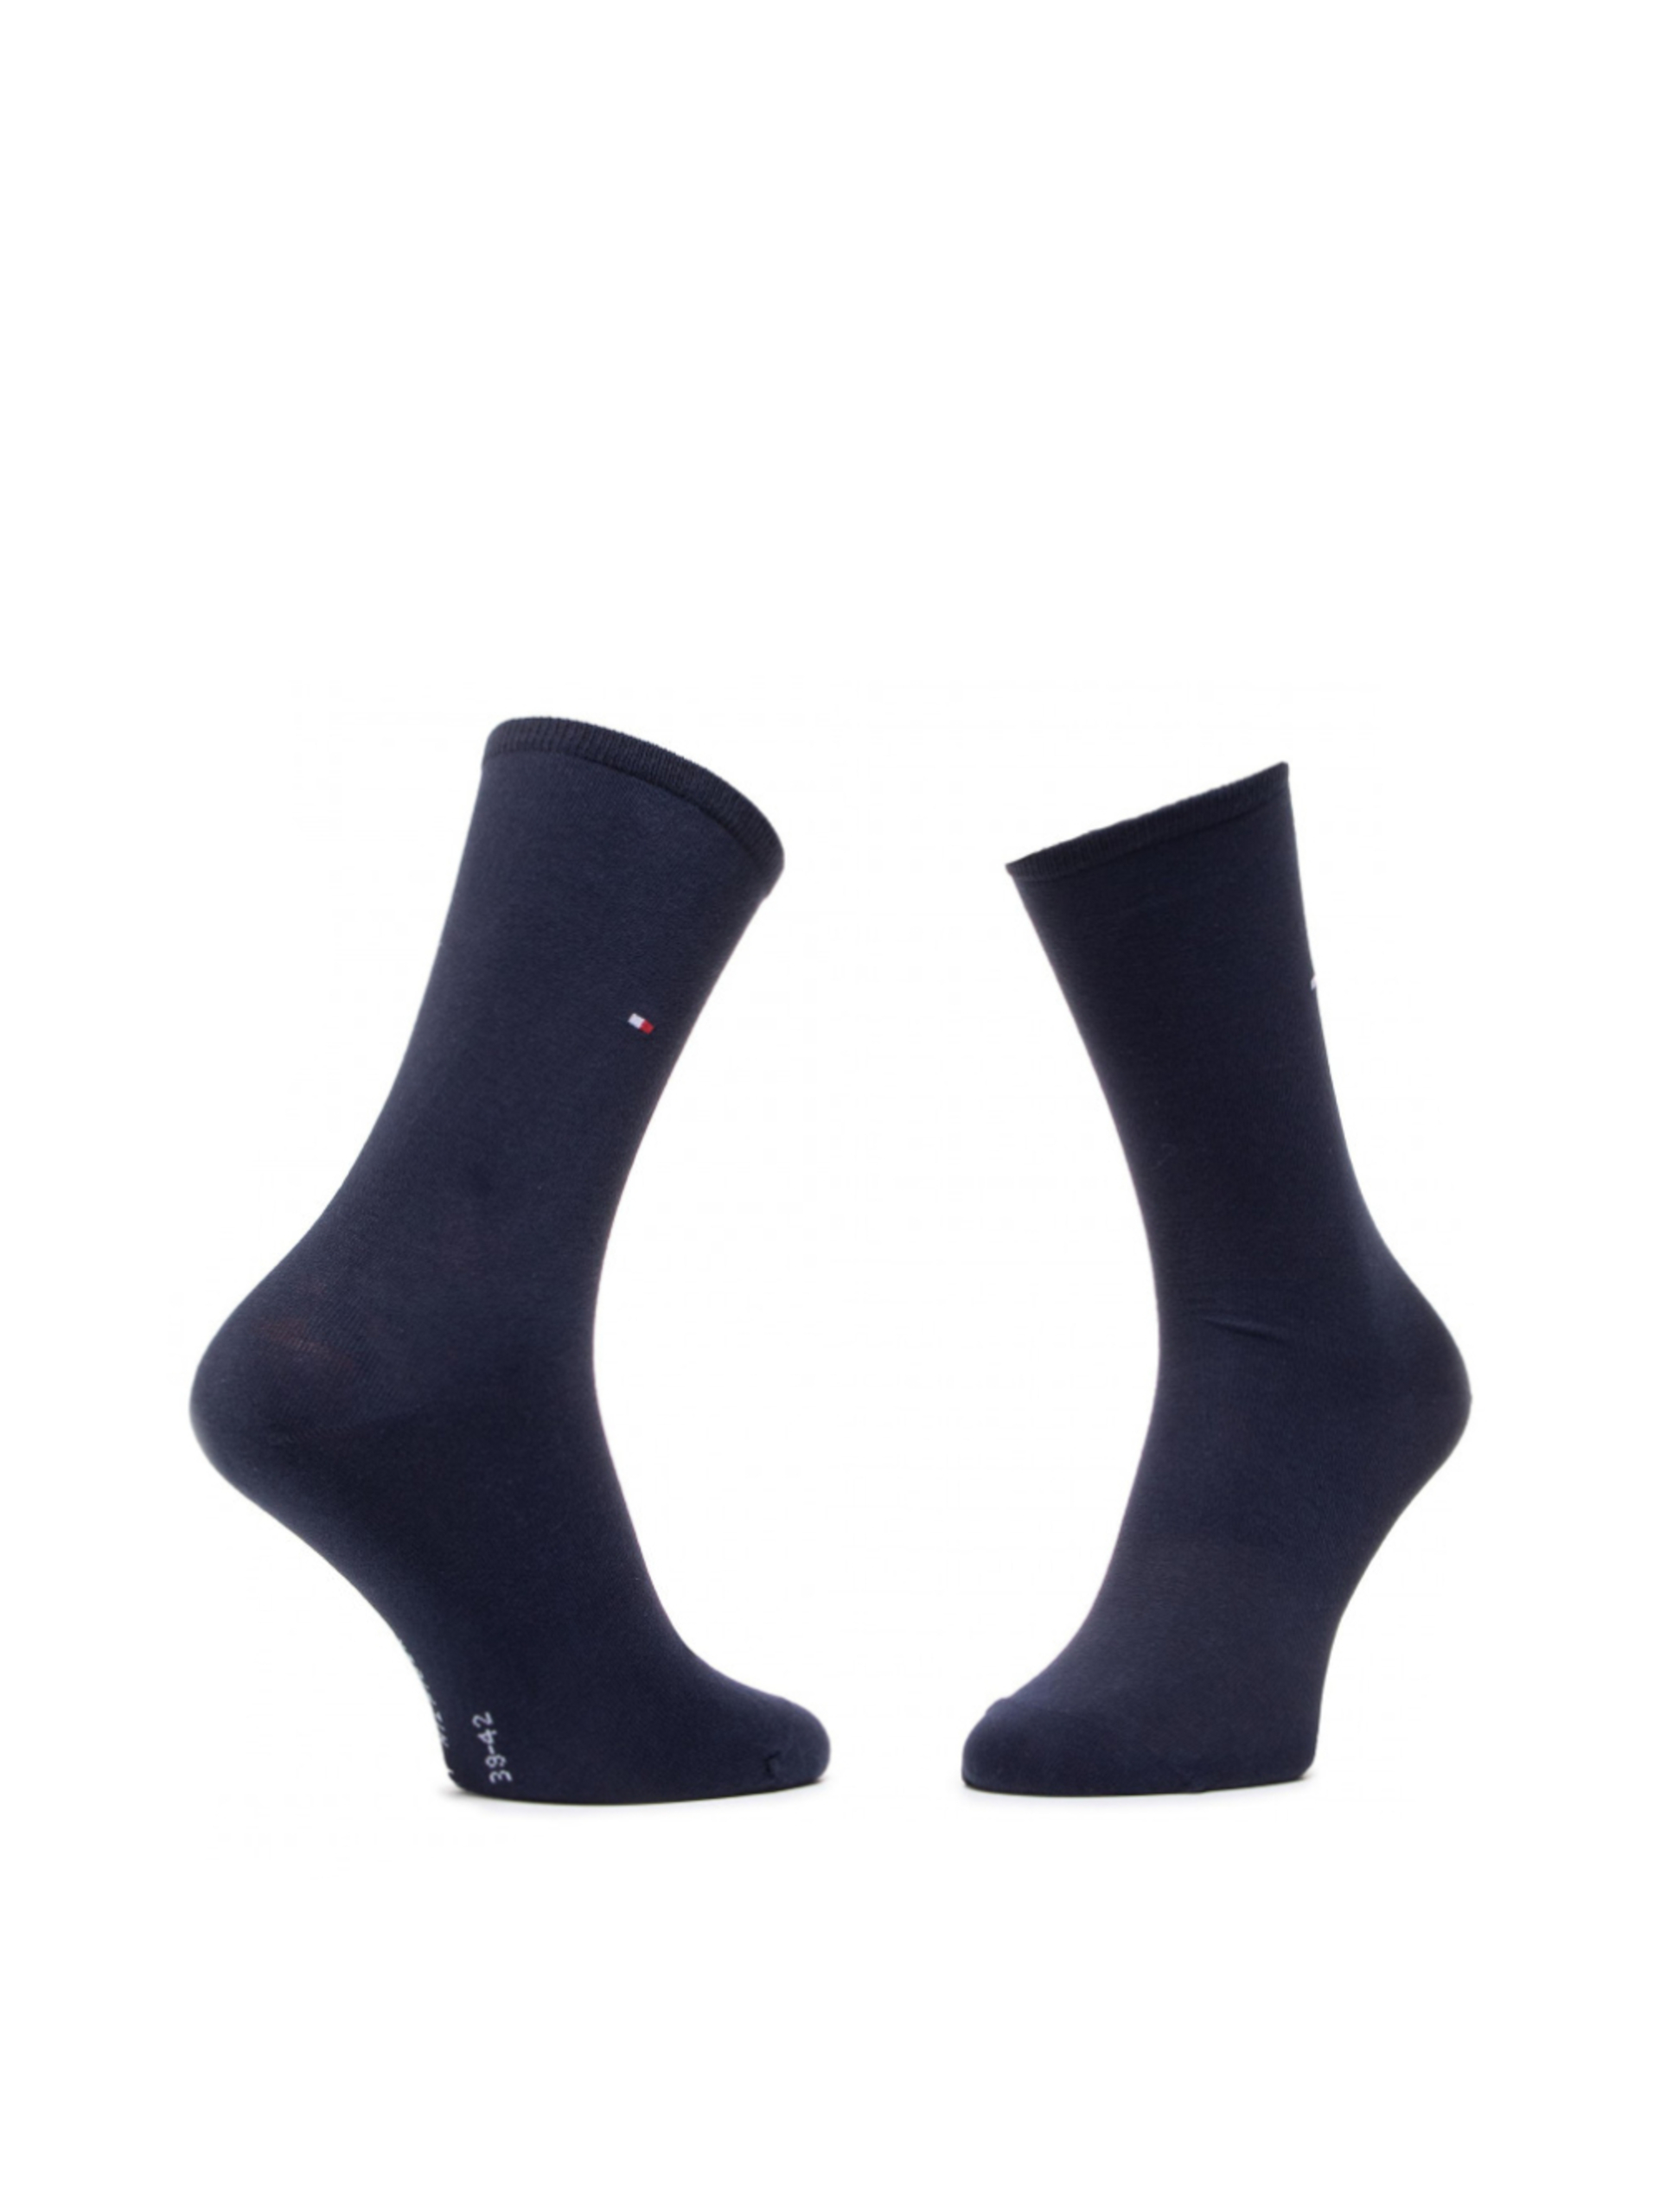 Tommy Hilfiger dámské bílé a modré ponožky 2 pack Dot - 35/38 (WHI)